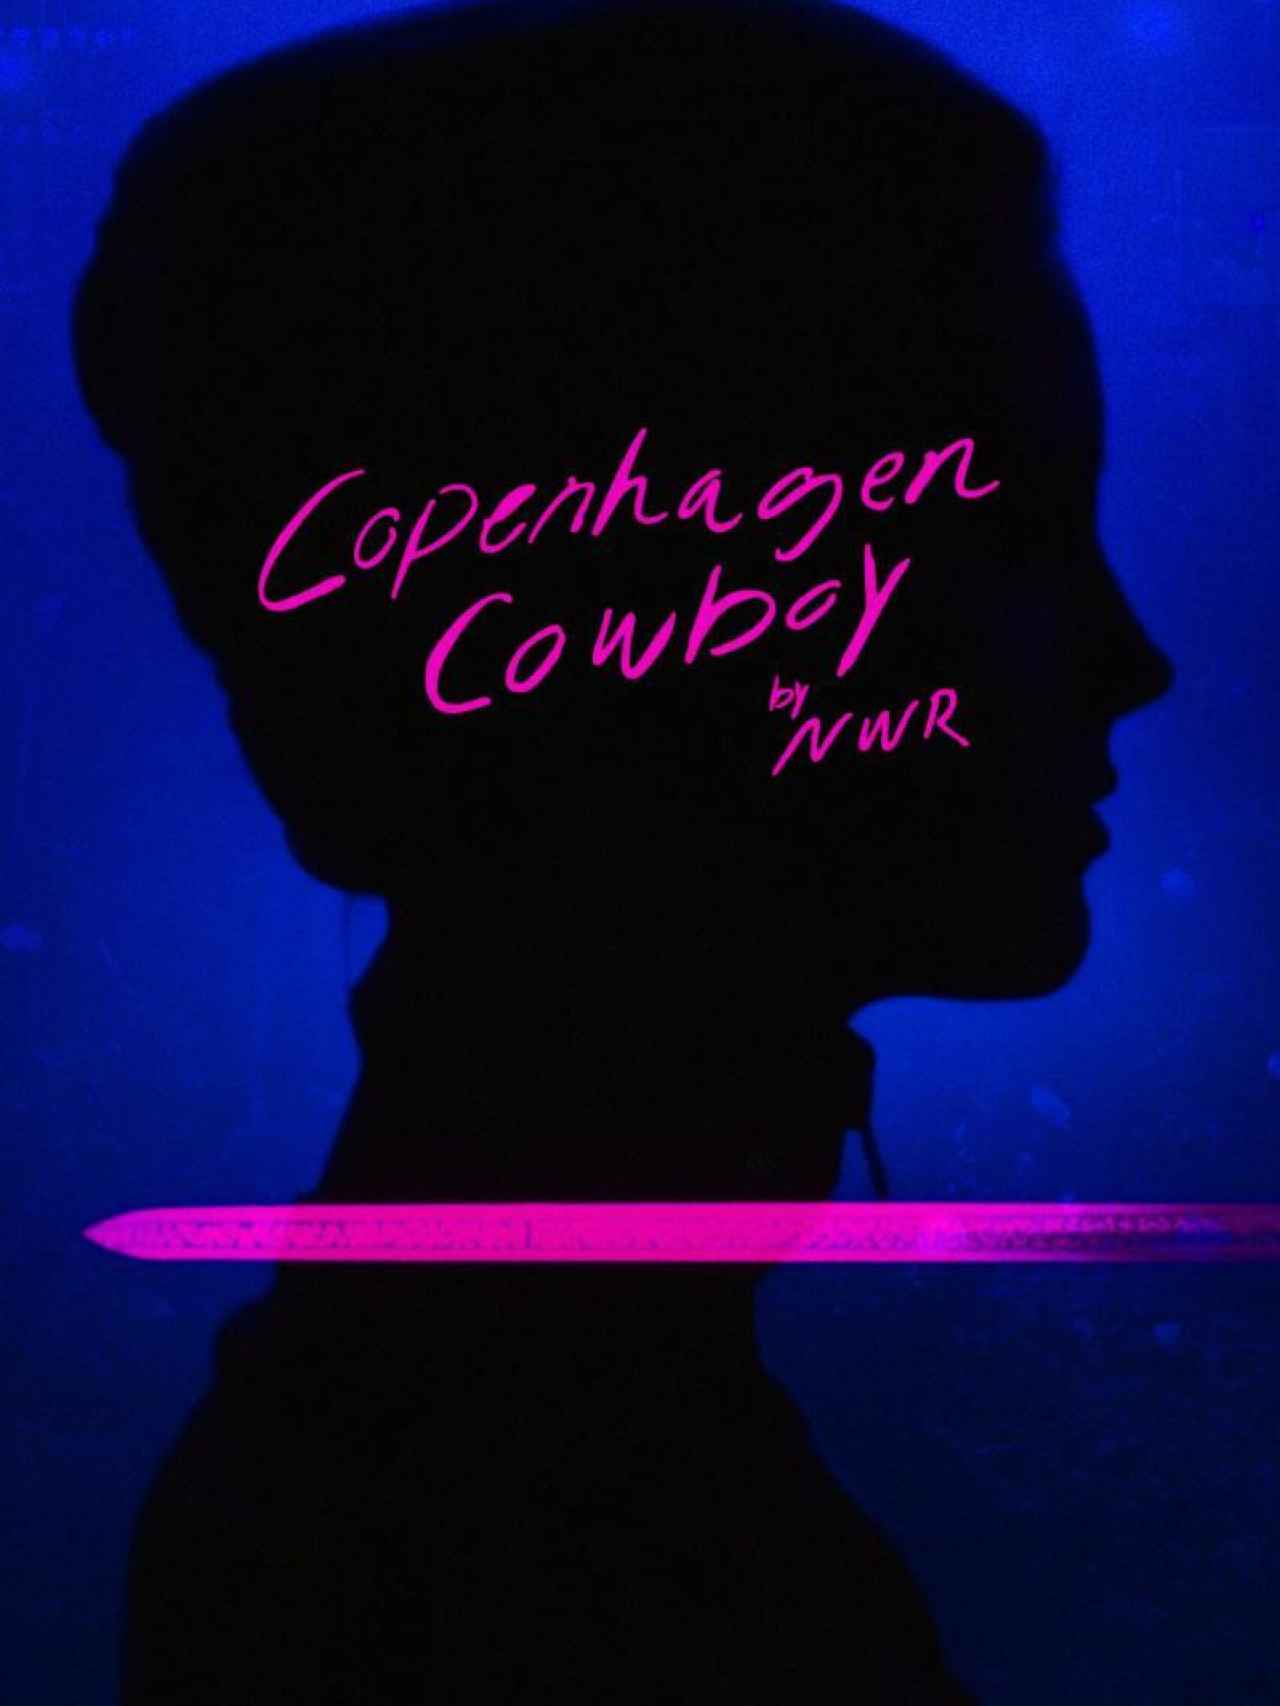 'Cowboy de Copenhague'